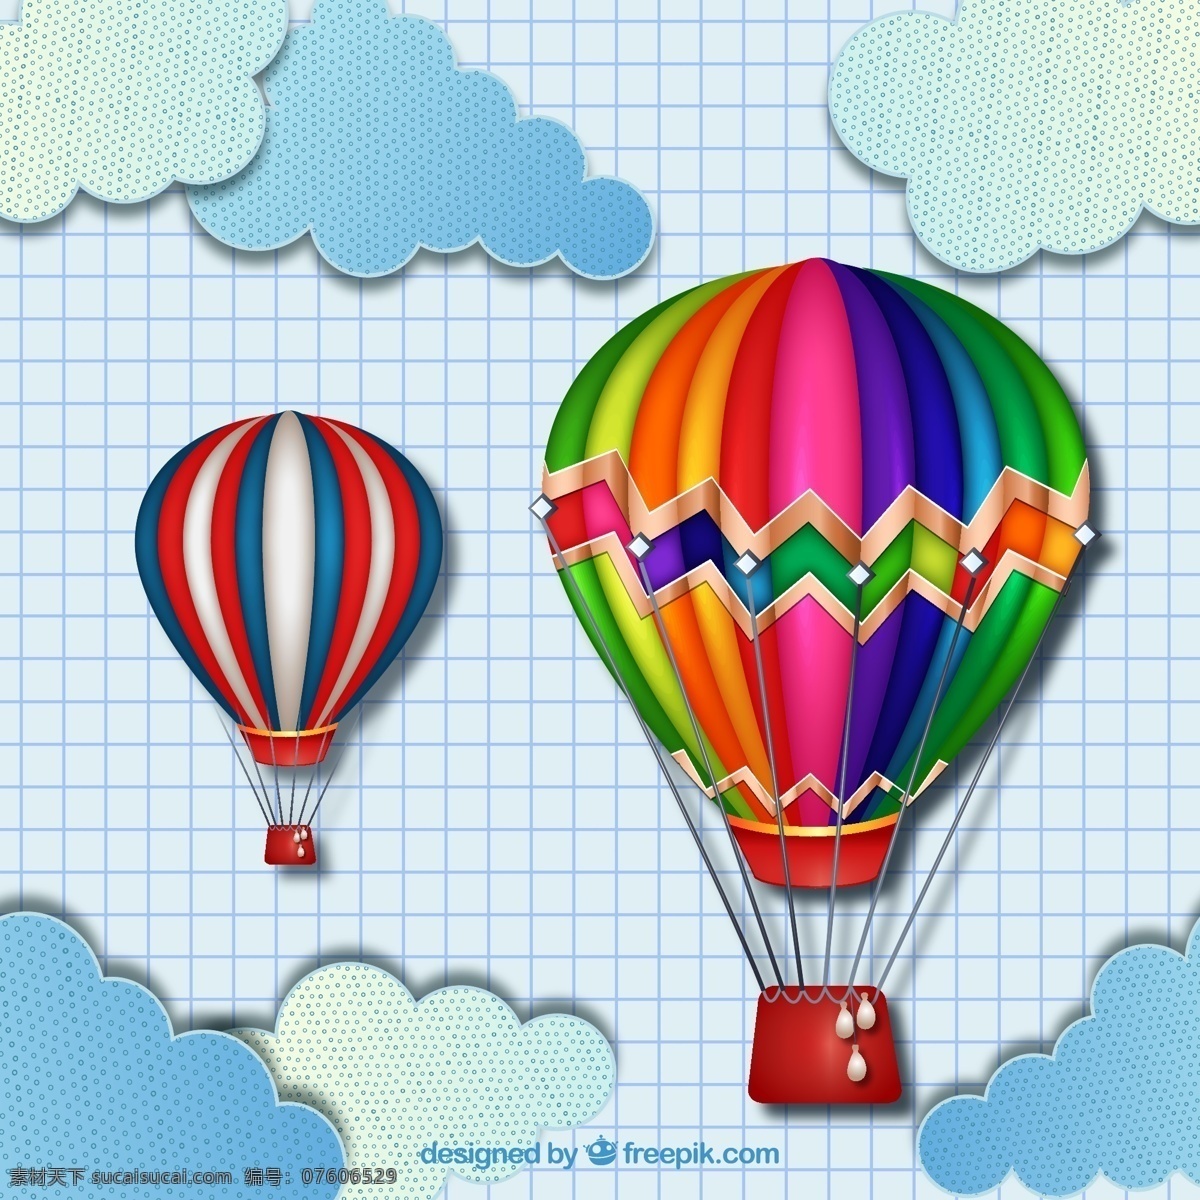 彩色 热气球 矢量 云朵 格子本 天空 剪贴 矢量图 ai格式 底纹 卡通设计